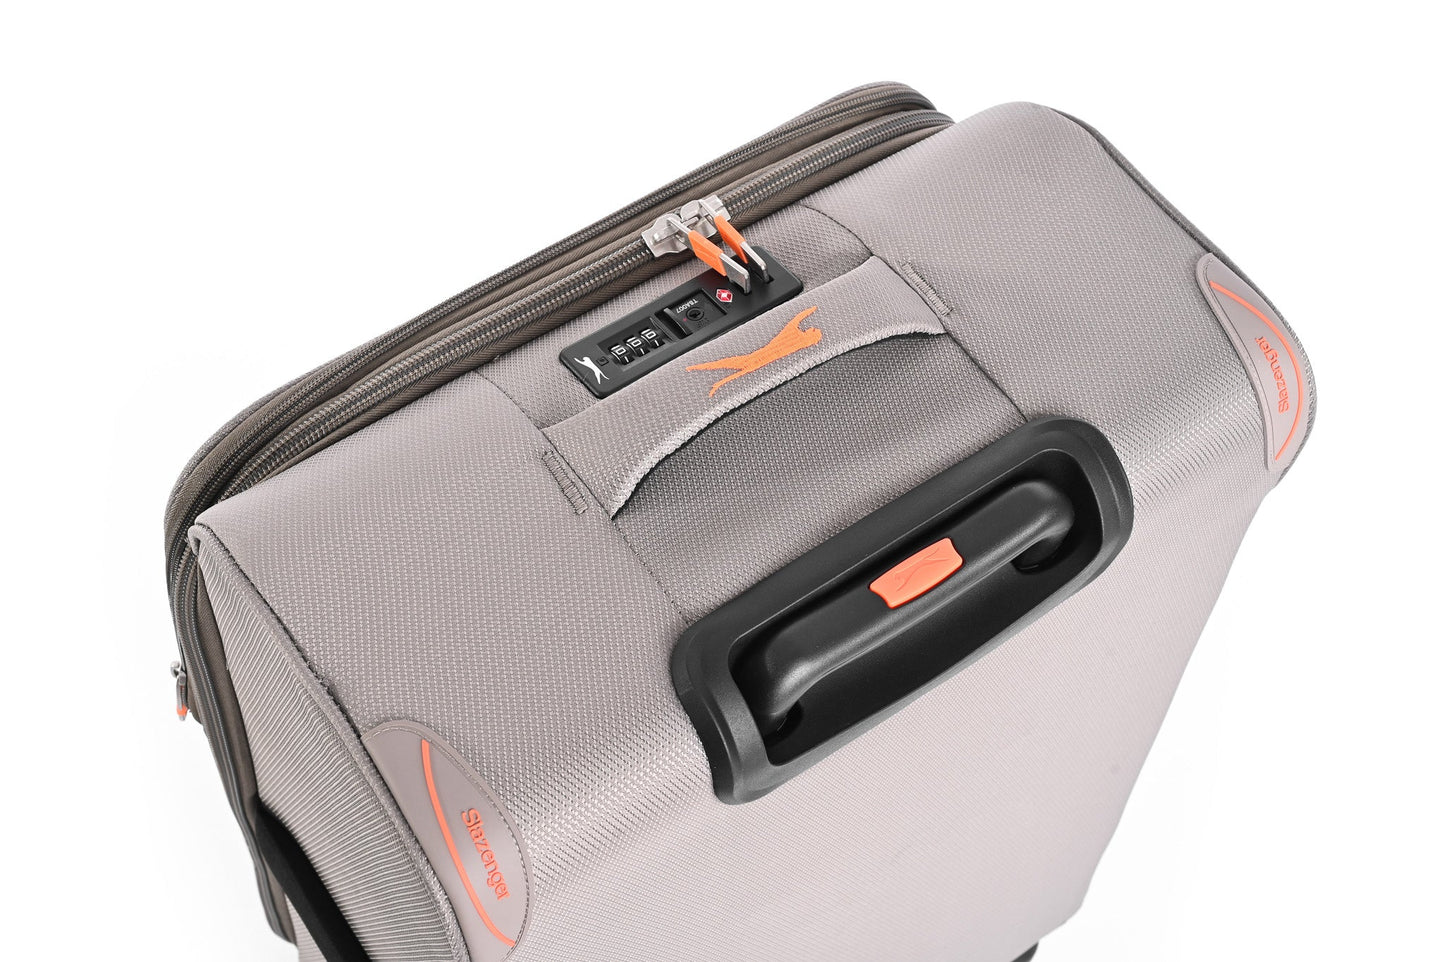 SLAZENGER - מזוודה מבד בינונית 23.5" דגם BARCELONA בצבע חאקי - MASHBIR//365